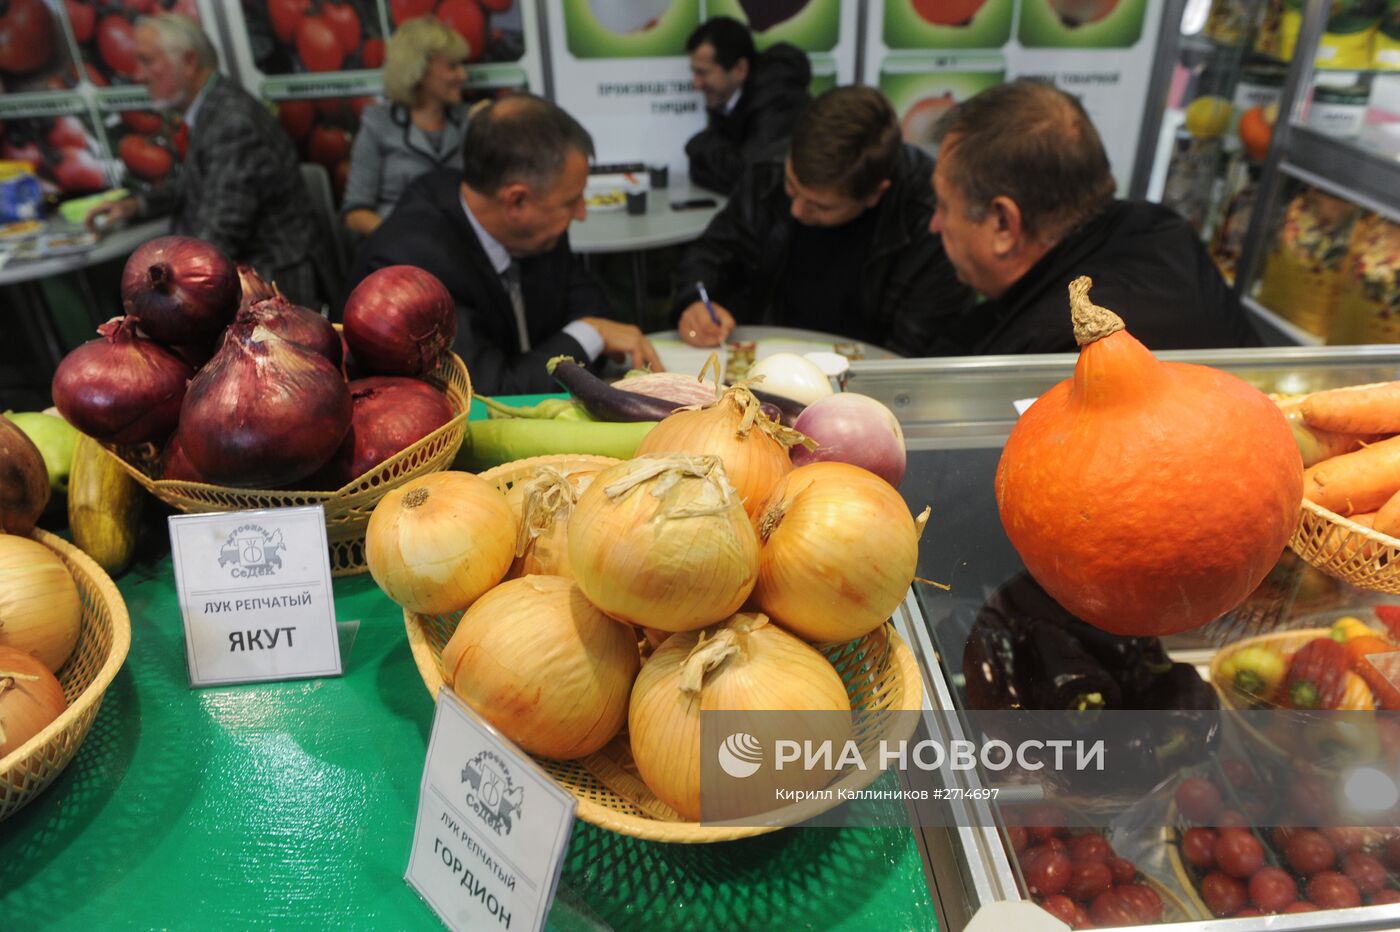 XVII Российская агропромышленная выставка "Золотая осень"